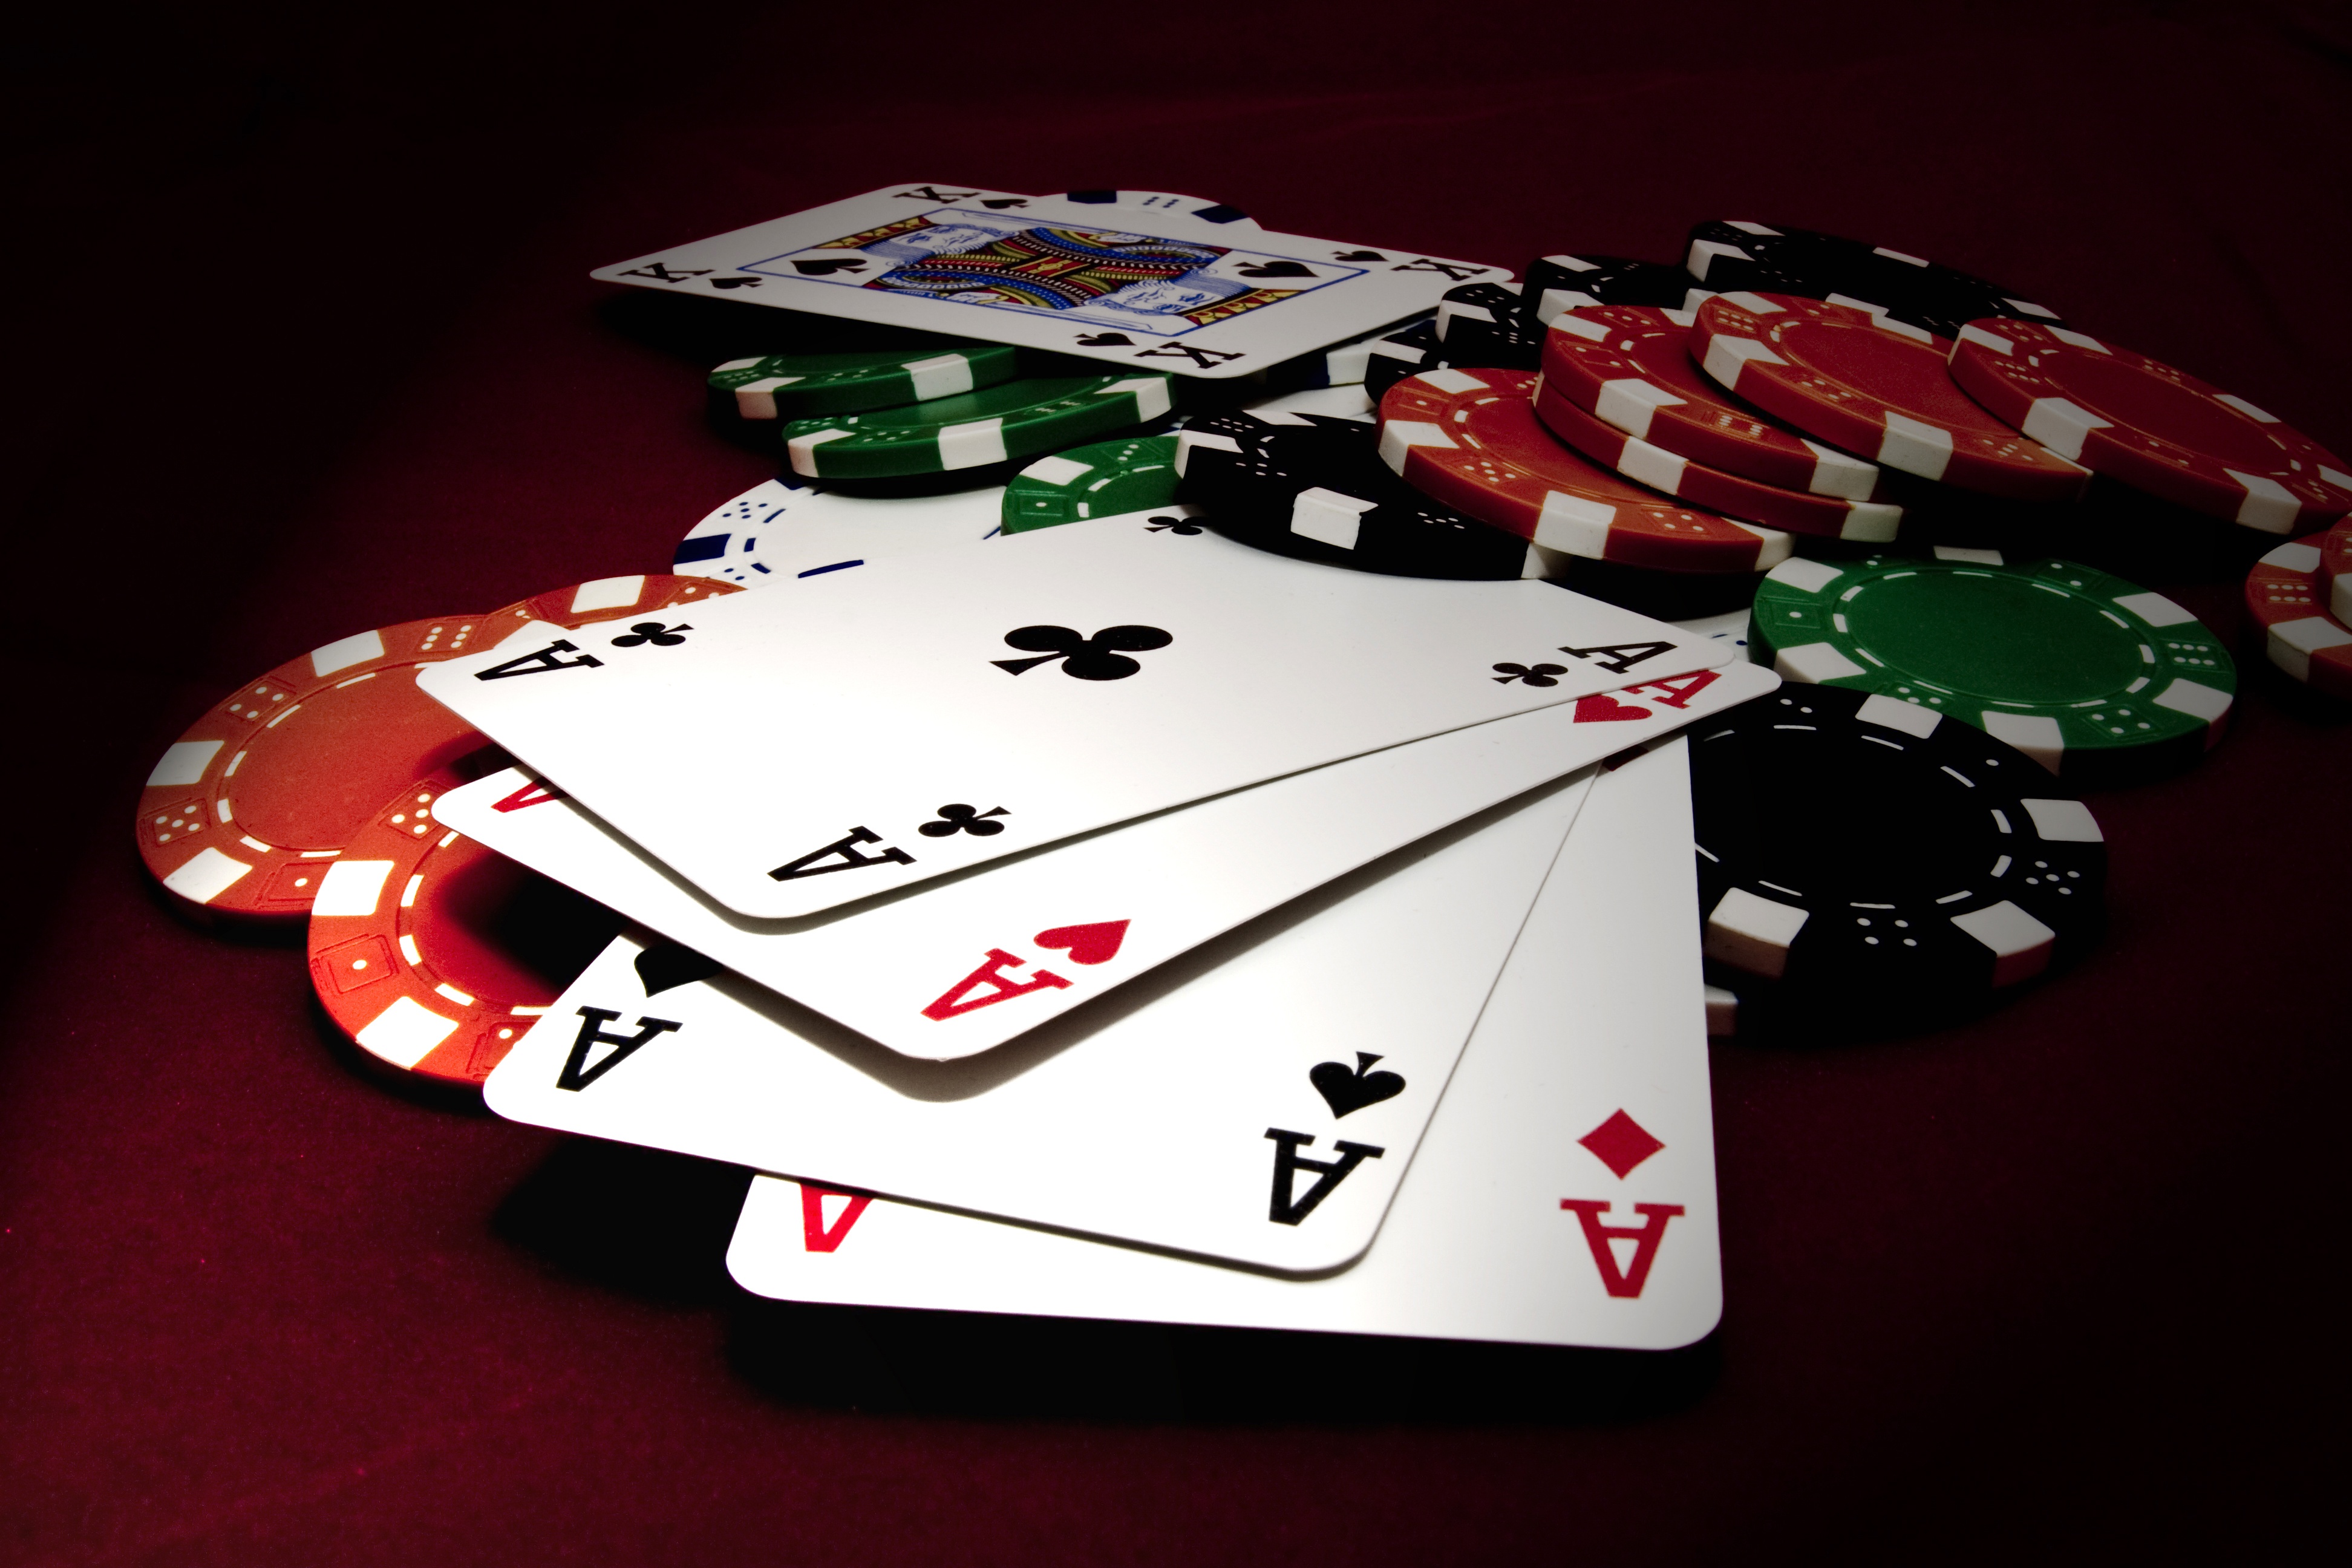 Скачать обои бесплатно Игры, Карты, Покер картинка на рабочий стол ПК